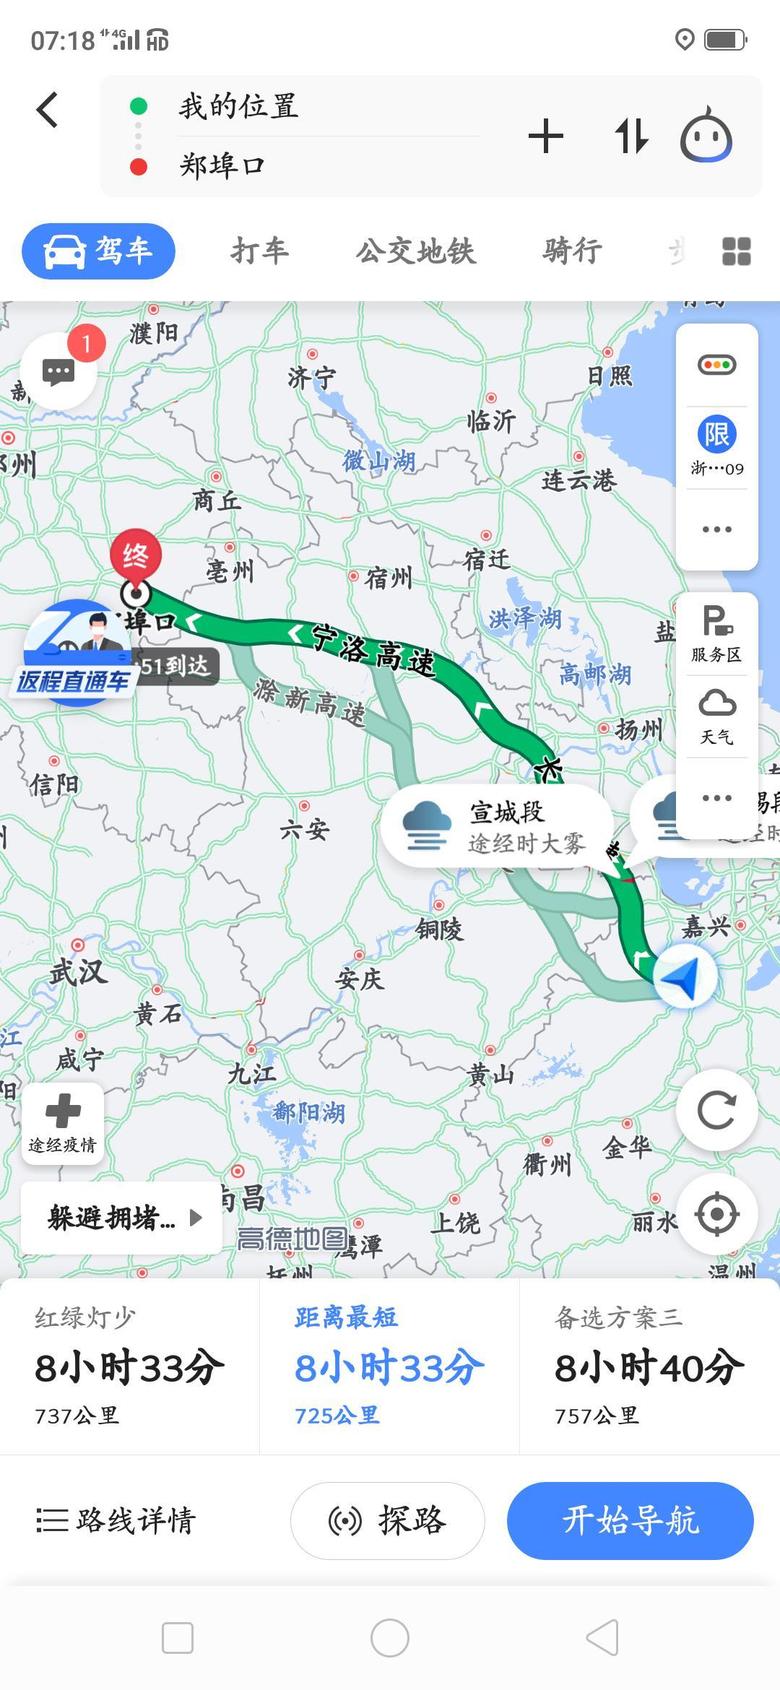 星越河南周口到杭州，720公里，285块的油，堵车一小时，下雨两小时左右差不多，目前油耗很满意，目前，没让我失望，支持吉利支持国产。